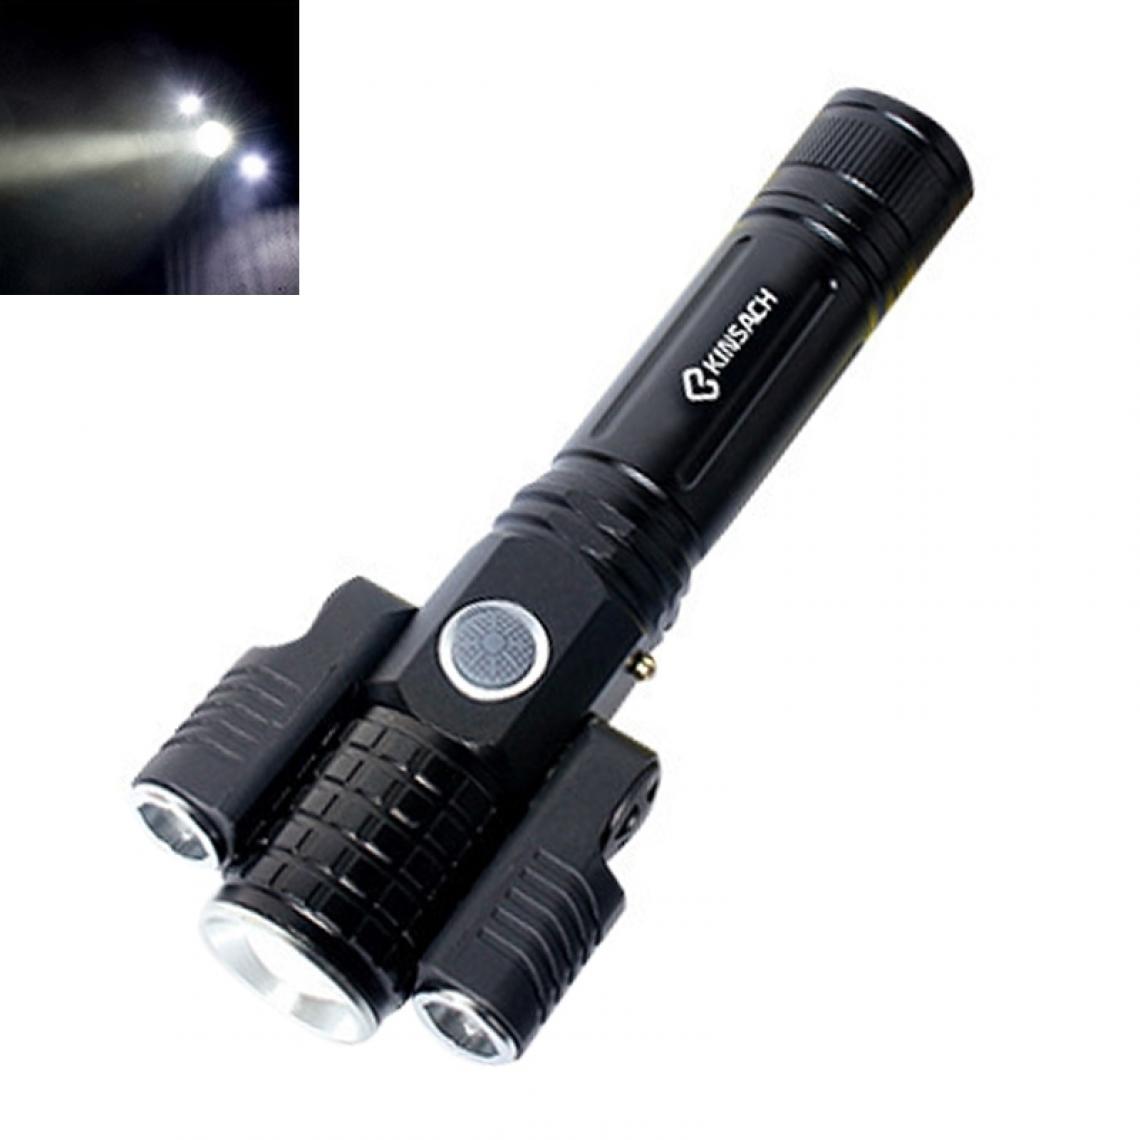 Wewoo - Lampe torche LED KS-738 de poche à DEL avec zoom T6 + XPE, étanche, 4 modes - Lampes portatives sans fil